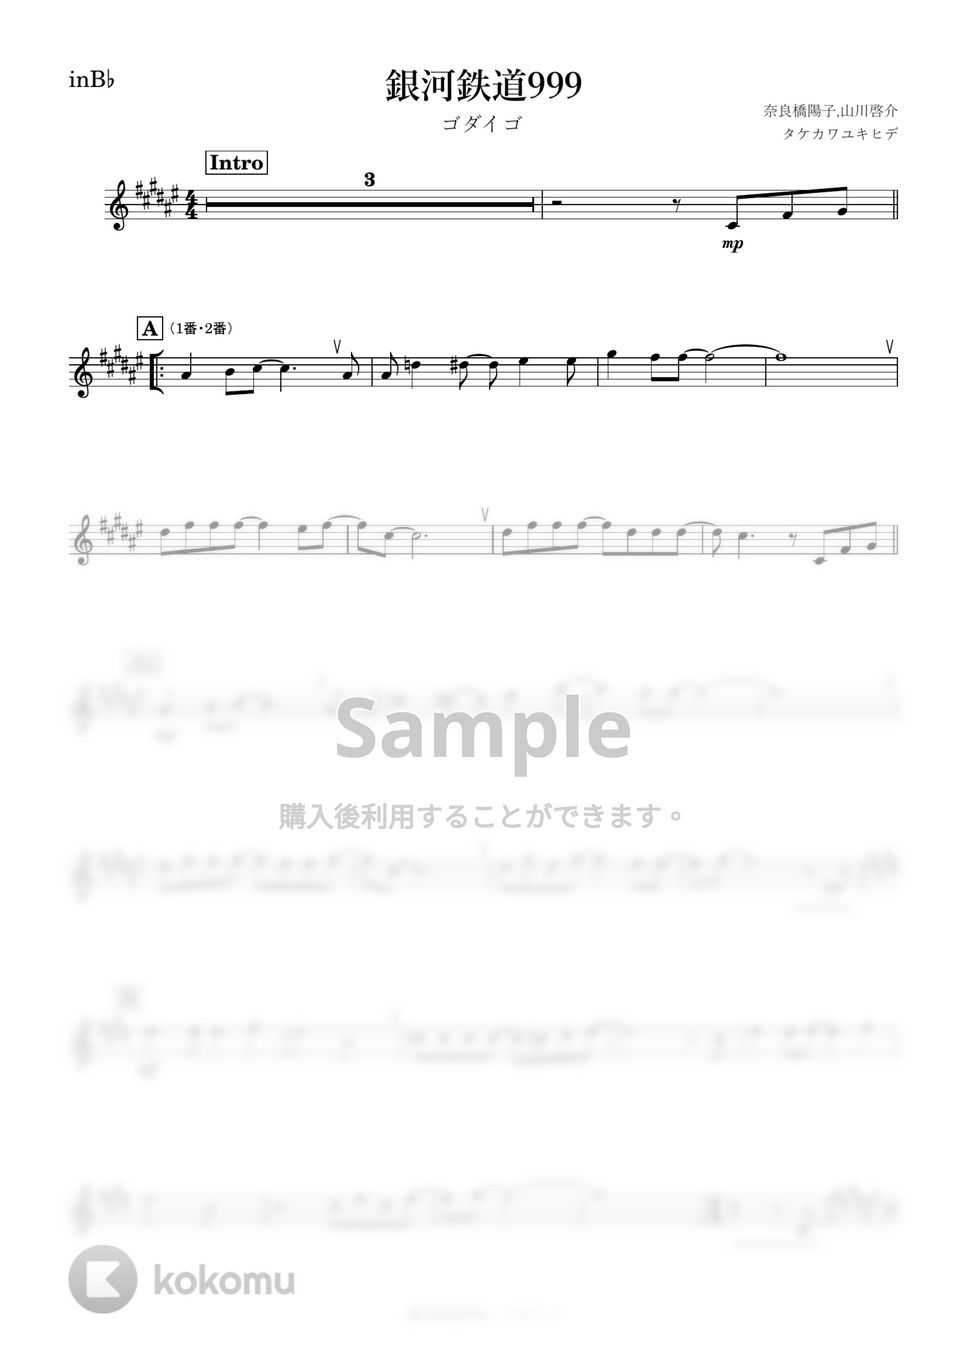 ゴダイゴ - 銀河鉄道999 (B♭) by kanamusic